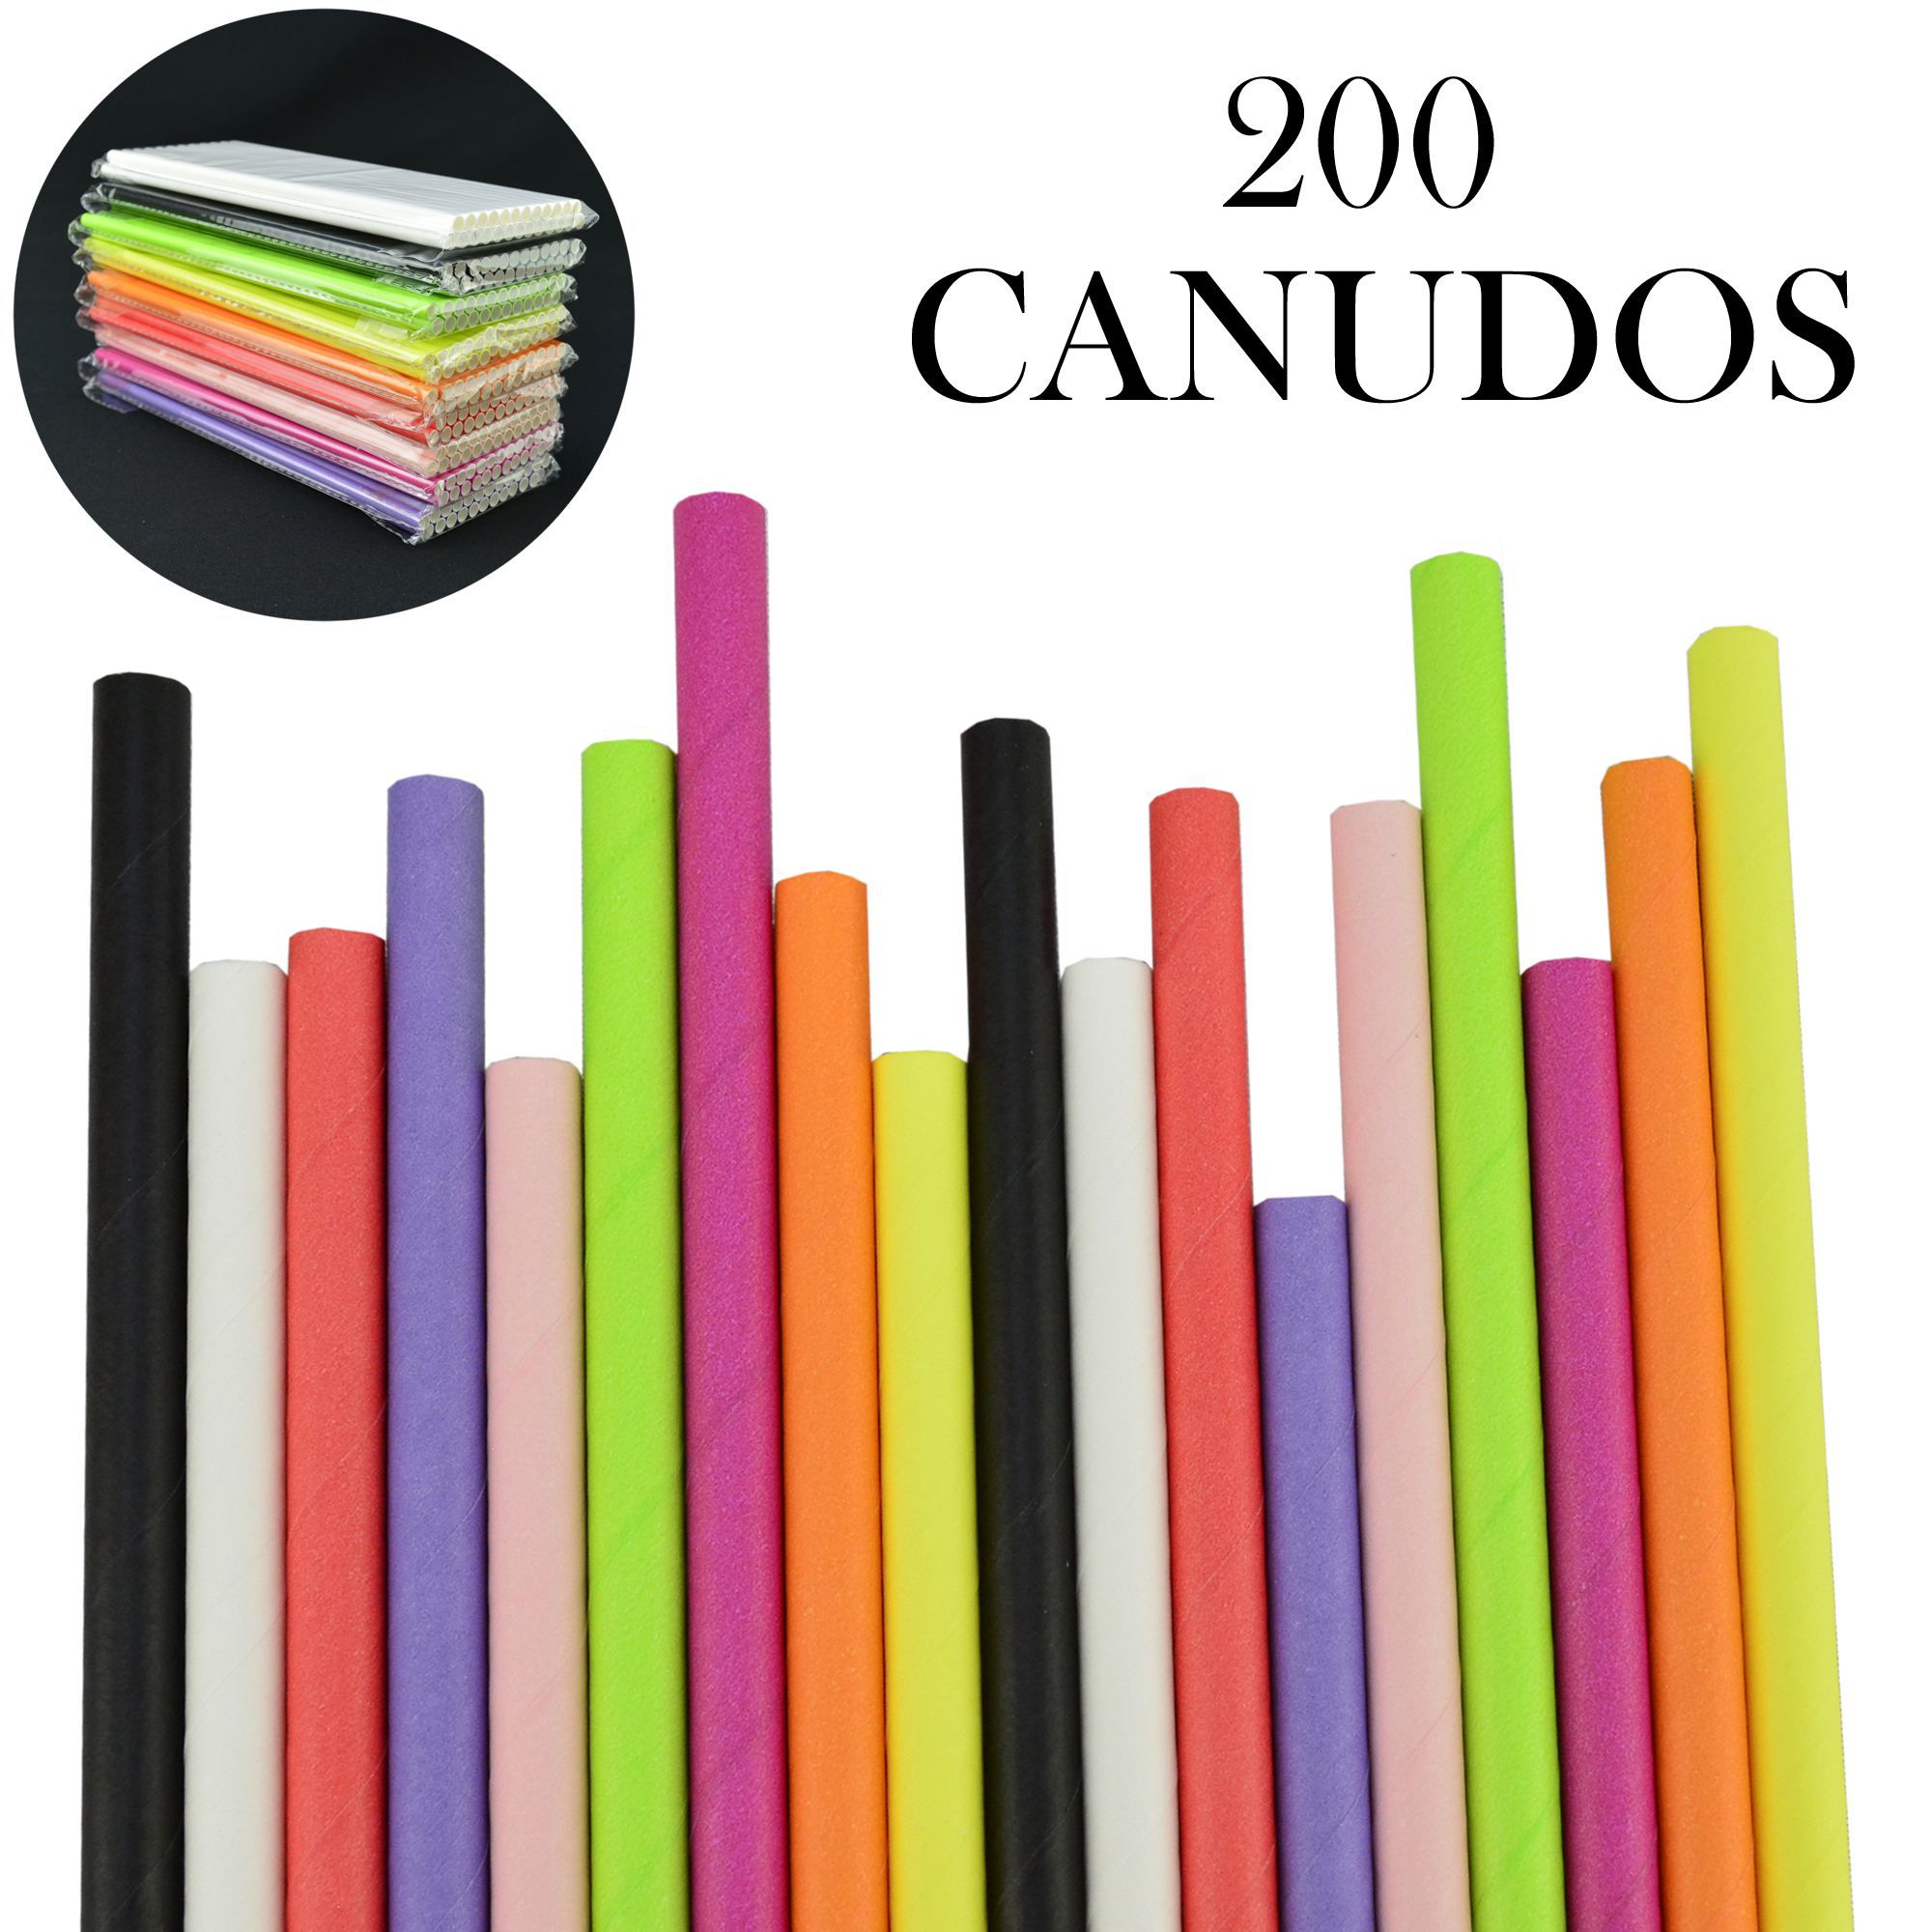 Canudos de Papel Biodegradável Coloridos 200 Unidades CBRN10837